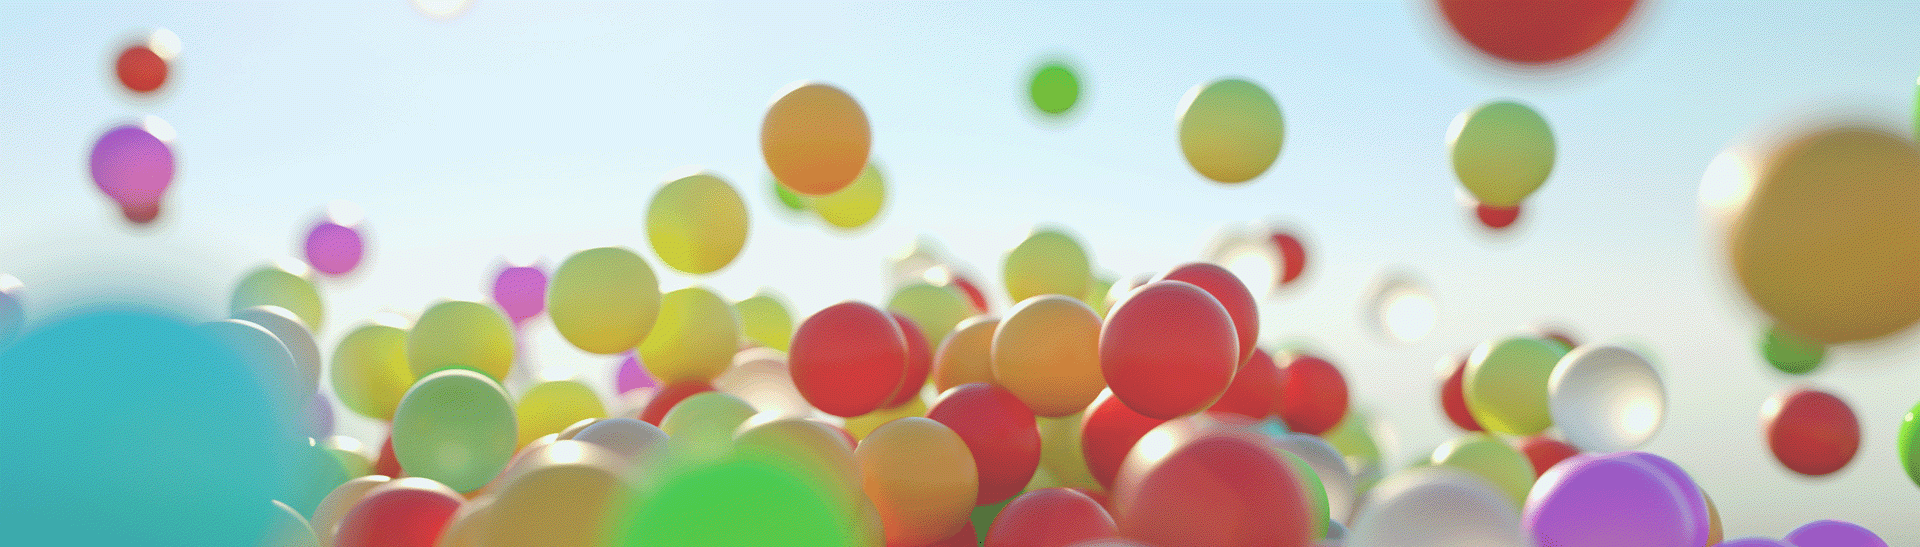 Assurance-invalidité - image de ballons colorés